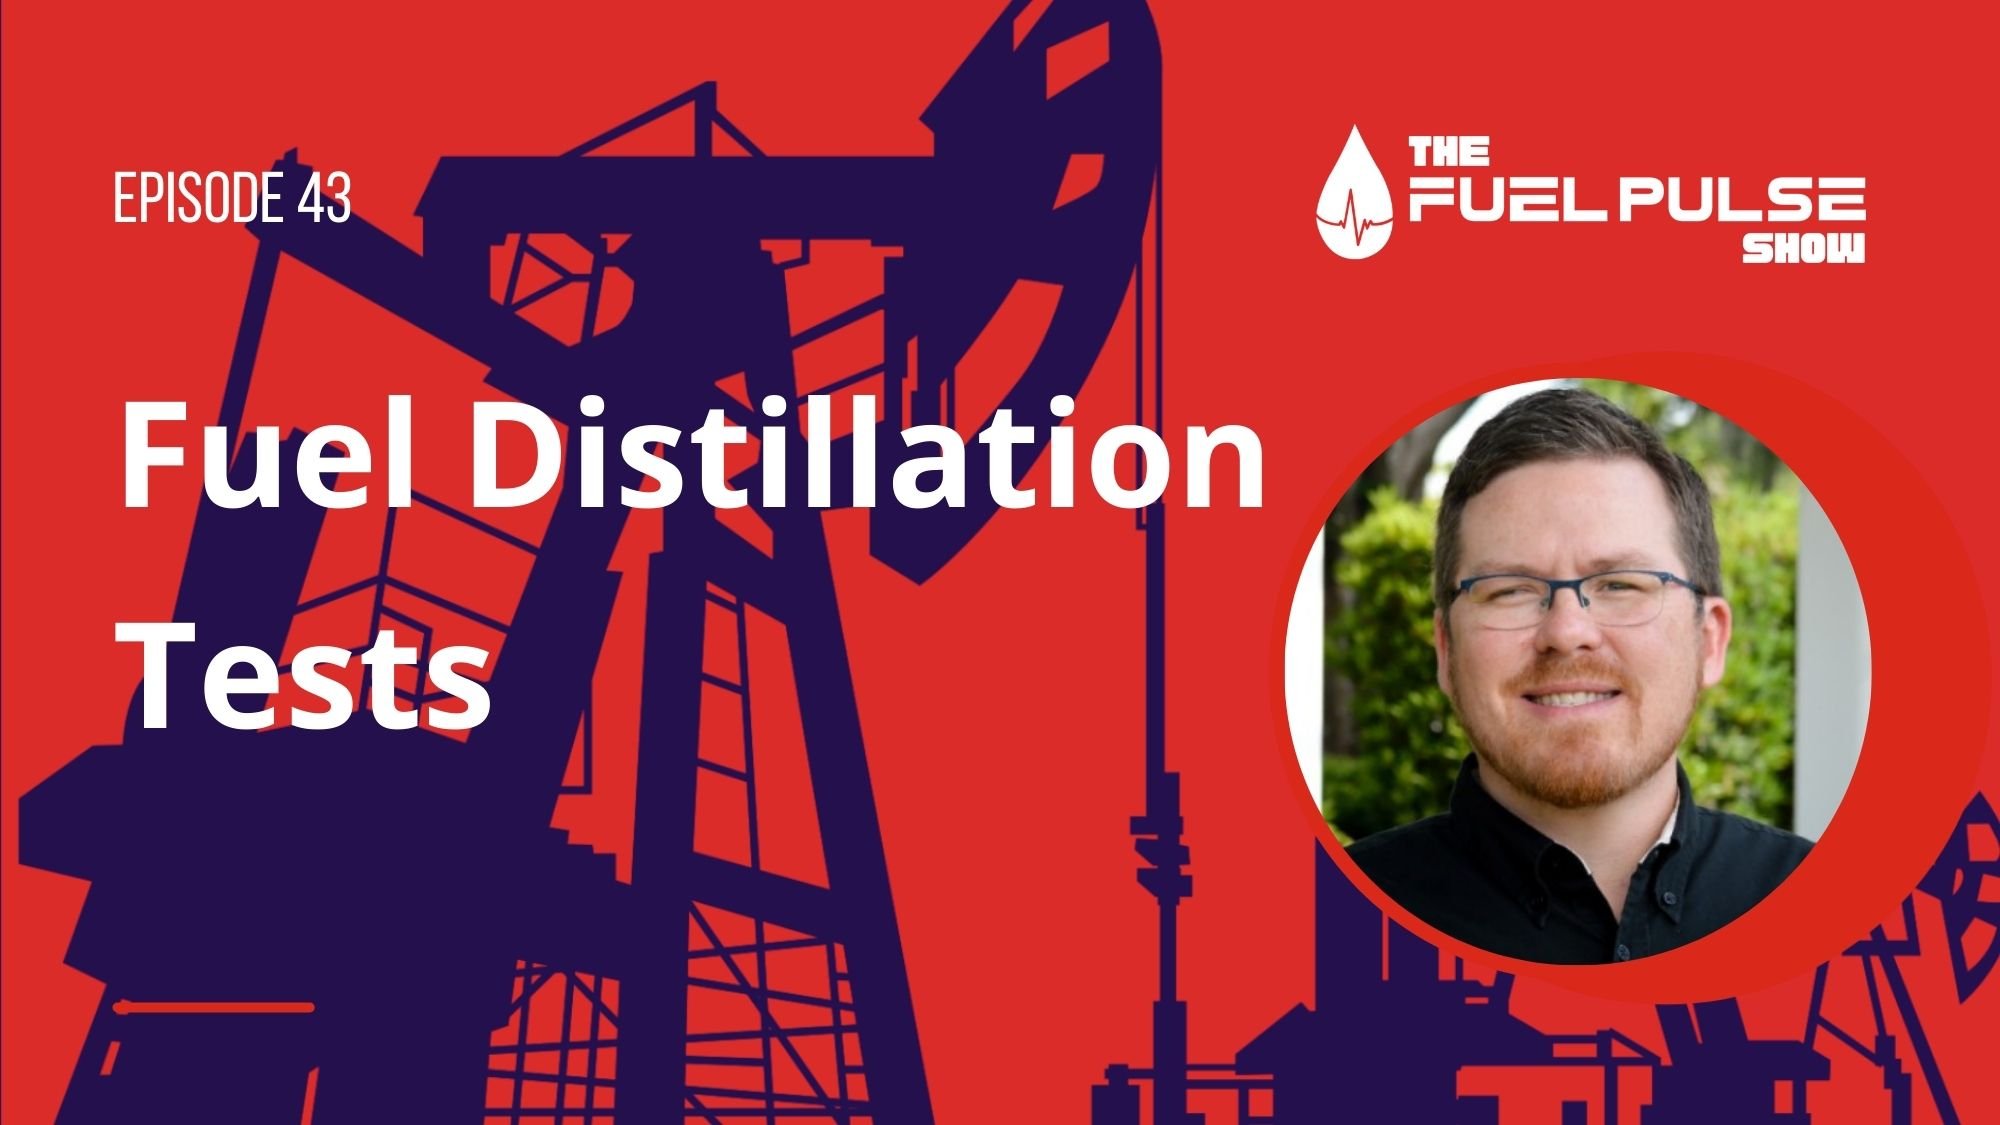 Episode 043 - Fuel Distillation Tests